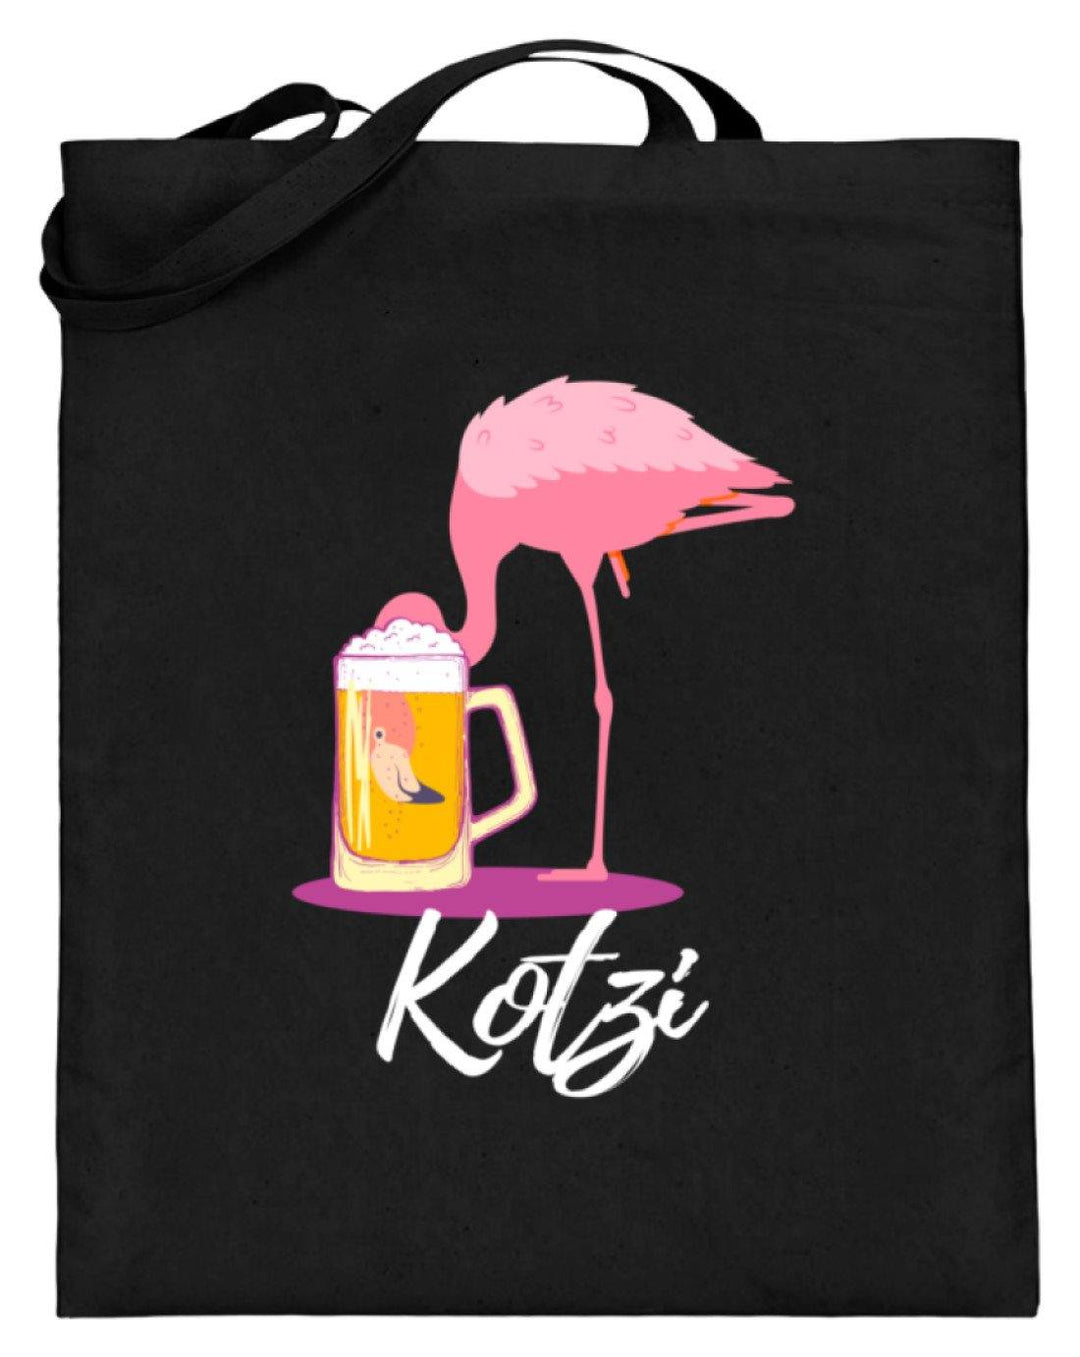 Flamingo Kotzi - Words on Shirt  - Jutebeutel (mit langen Henkeln) - Words on Shirts Sag es mit dem Mittelfinger Shirts Hoodies Sweatshirt Taschen Gymsack Spruch Sprüche Statement